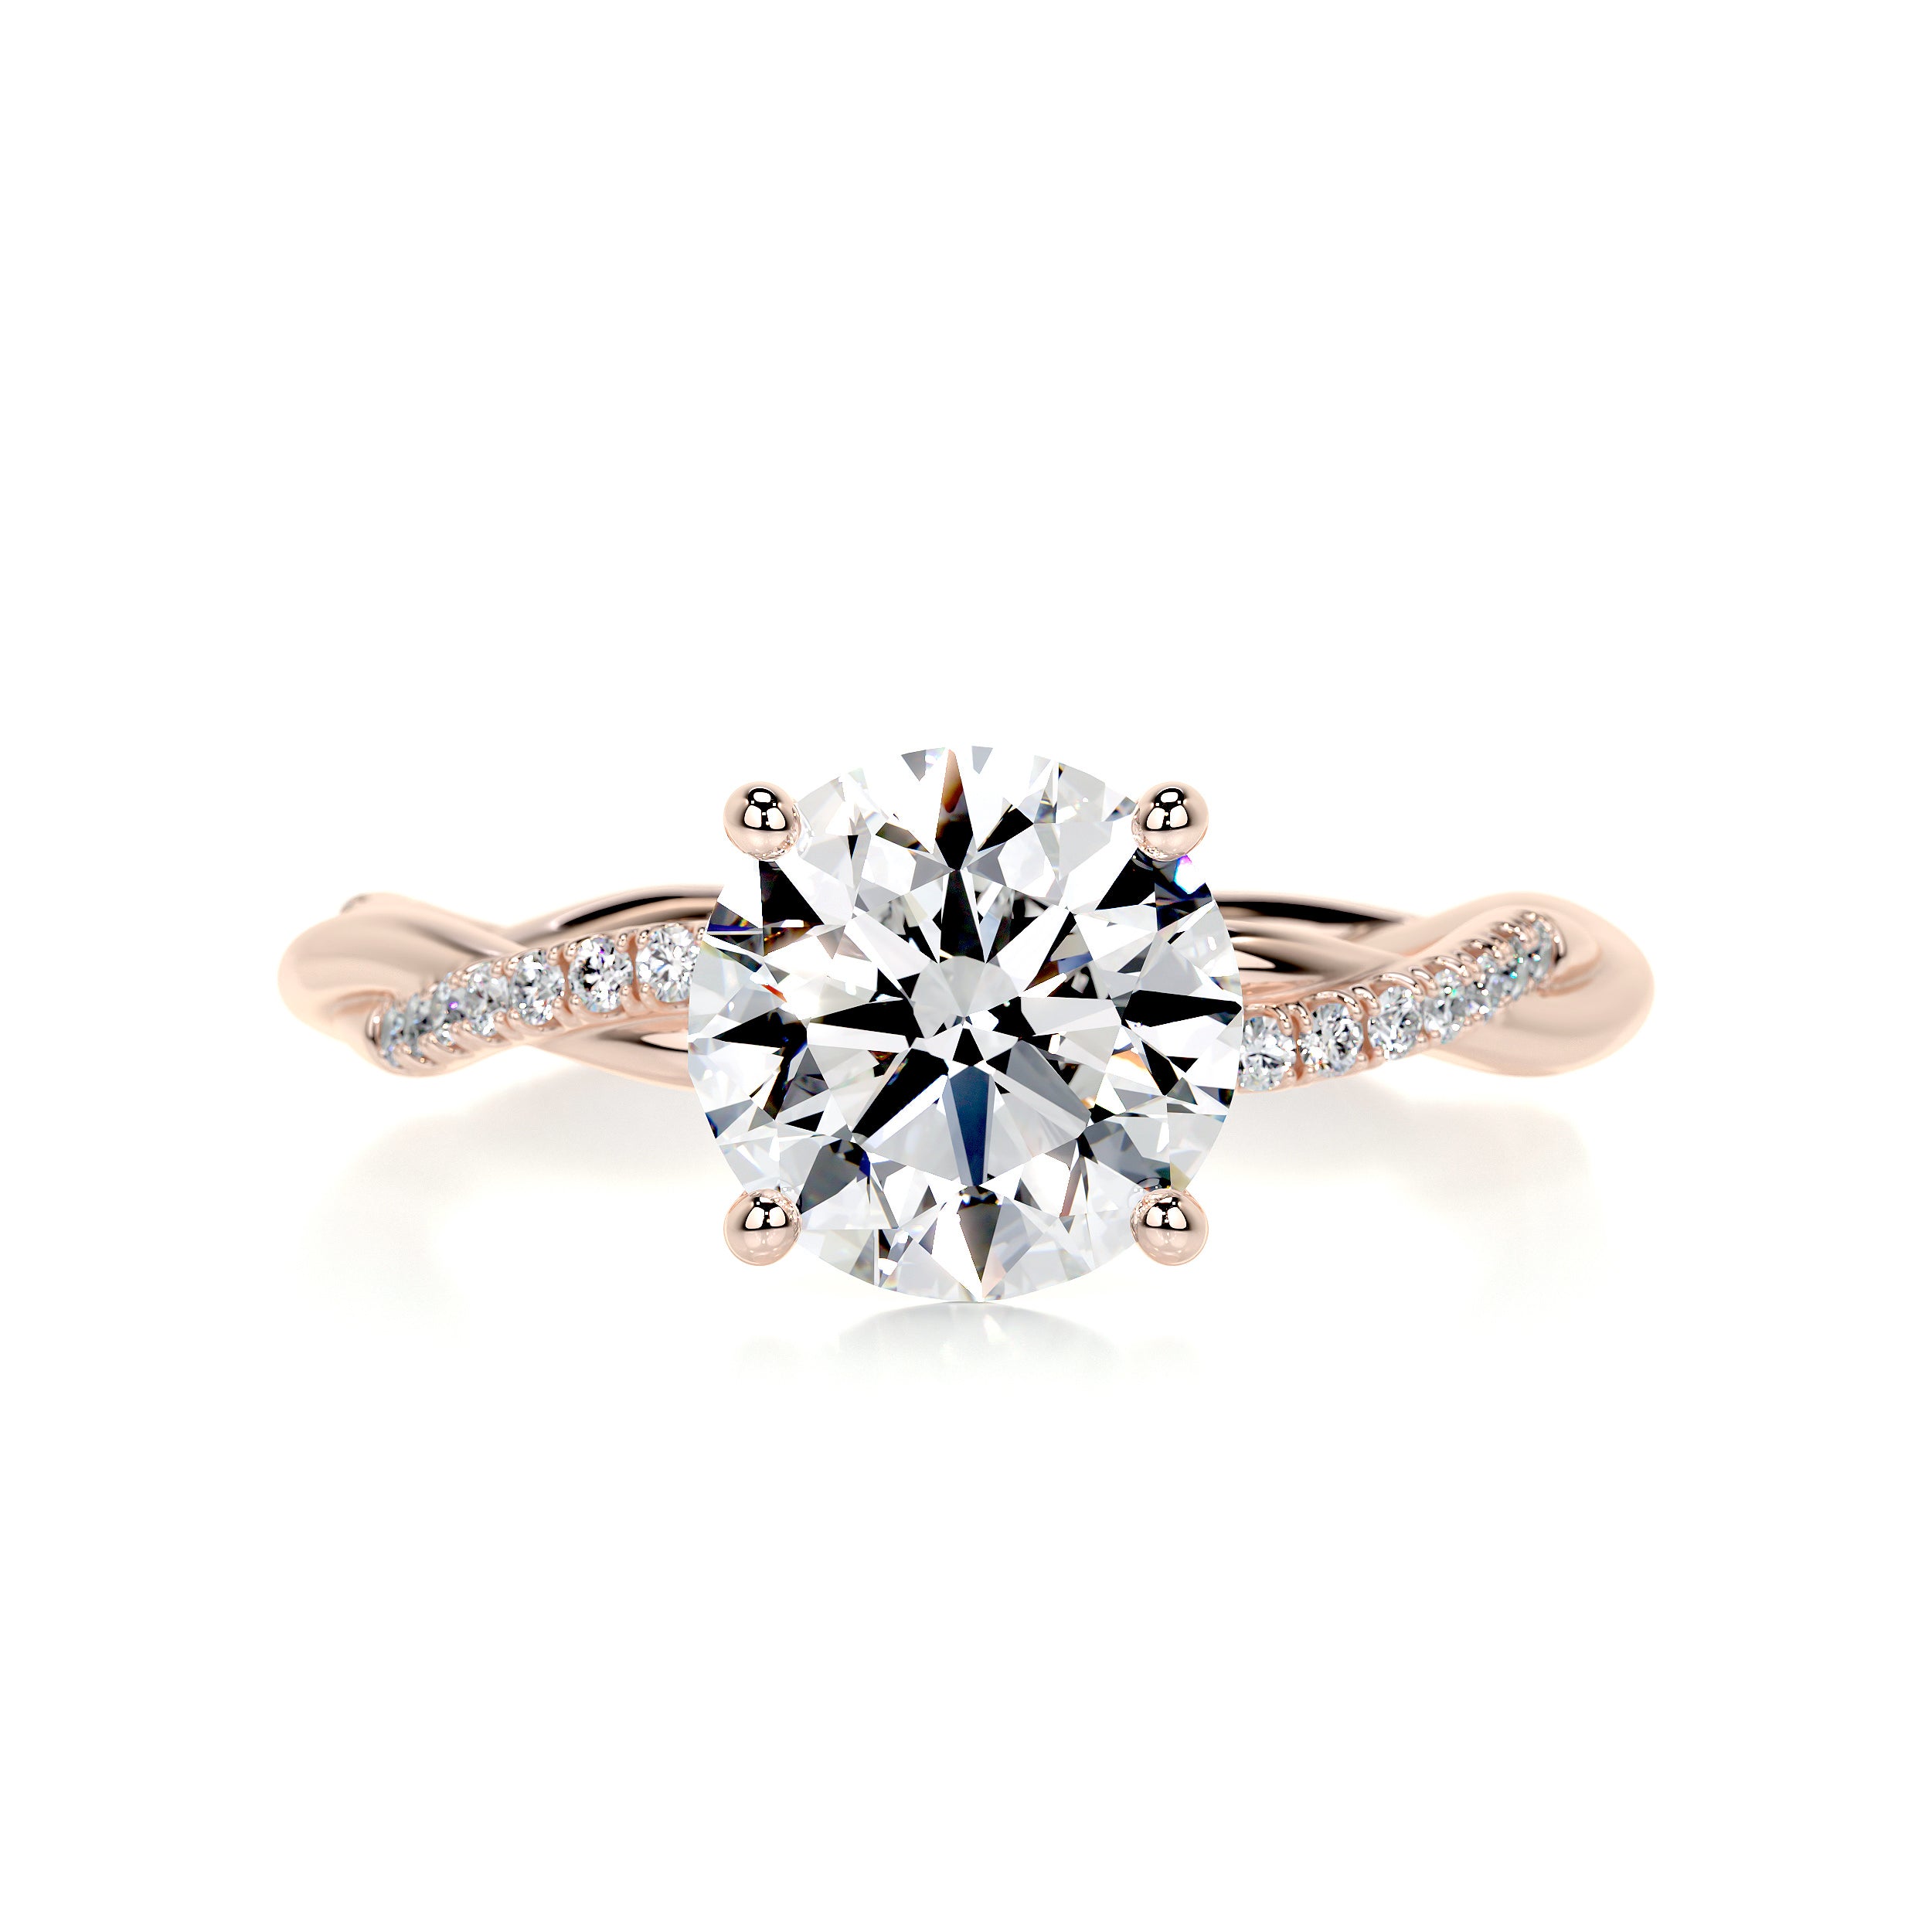 Crystal Diamond Engagement Ring   (1.8 Carat) -14K Rose Gold